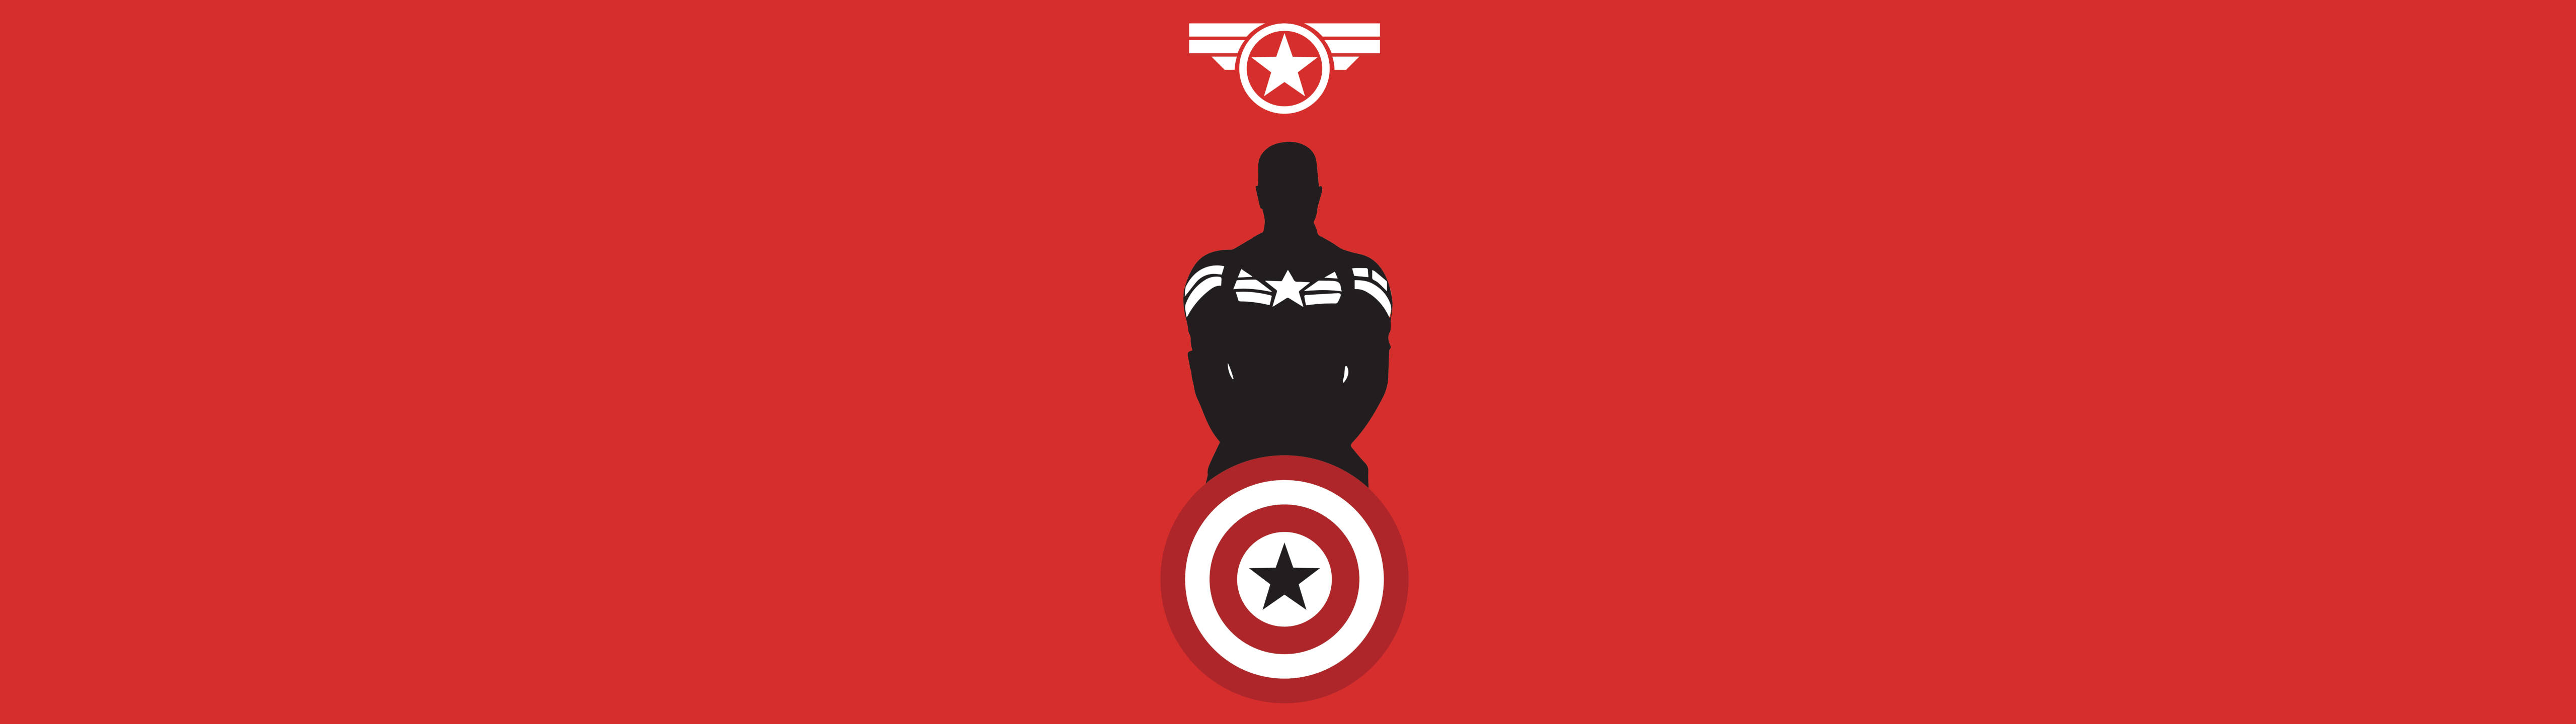 Marvel Hero Captain America 5120 X 1440 Wallpaper